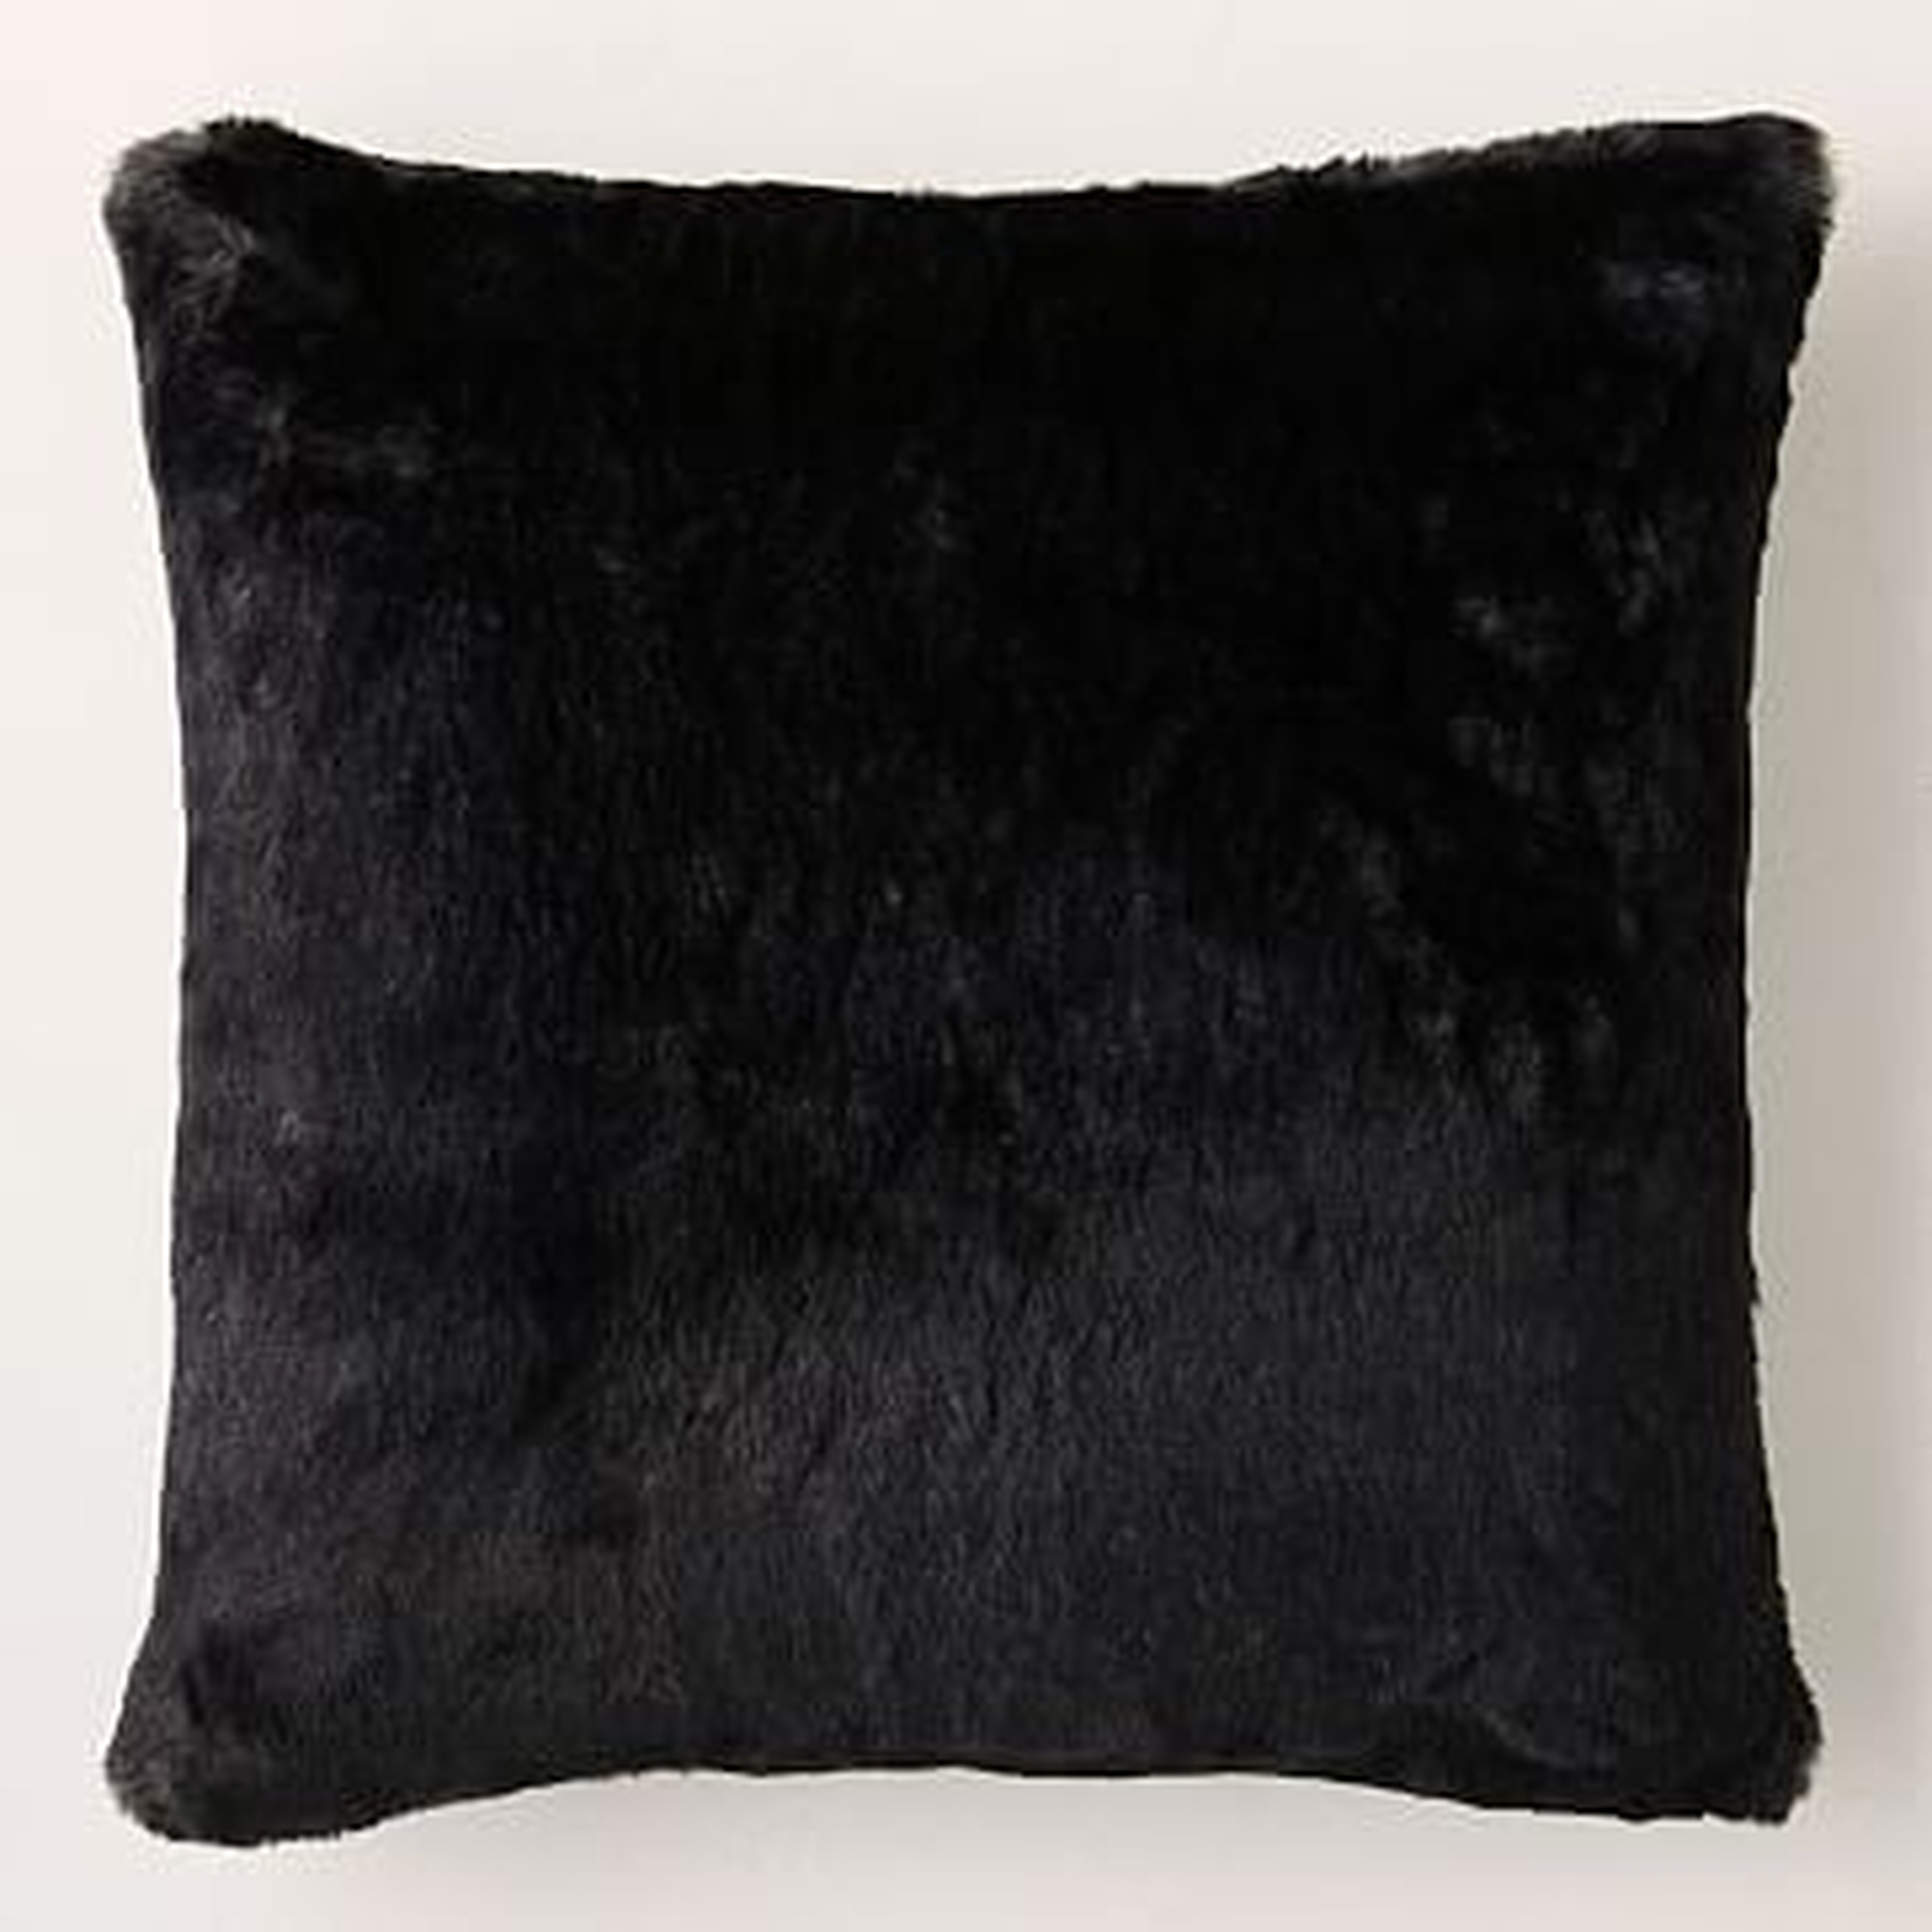 Faux Fur Chinchilla Pillow Cover, 20"x20", Black - West Elm